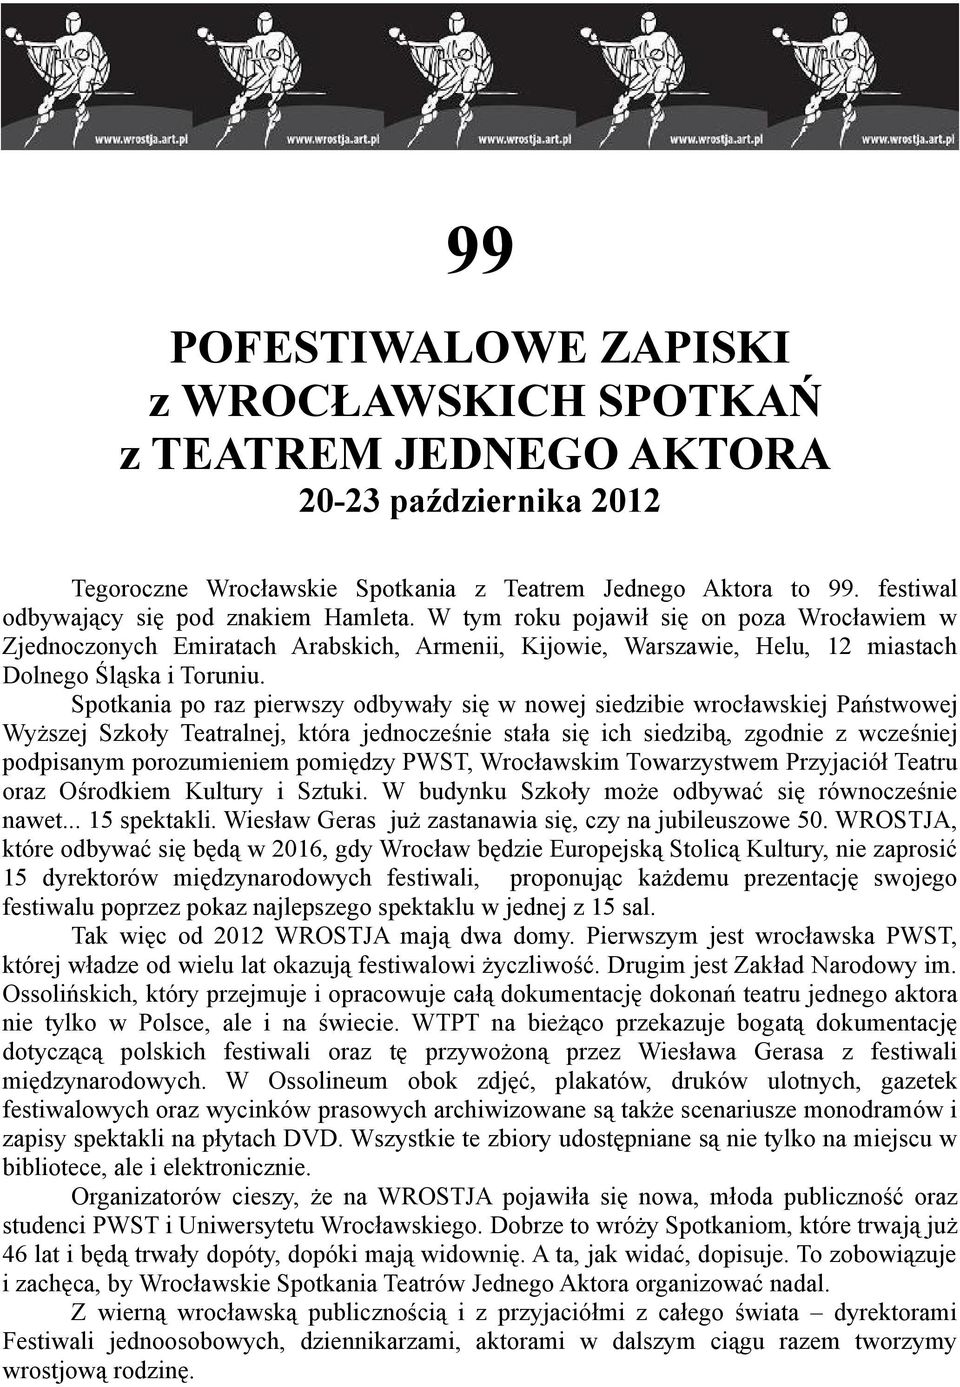 Spotkania po raz pierwszy odbywały się w nowej siedzibie wrocławskiej Państwowej Wyższej Szkoły Teatralnej, która jednocześnie stała się ich siedzibą, zgodnie z wcześniej podpisanym porozumieniem